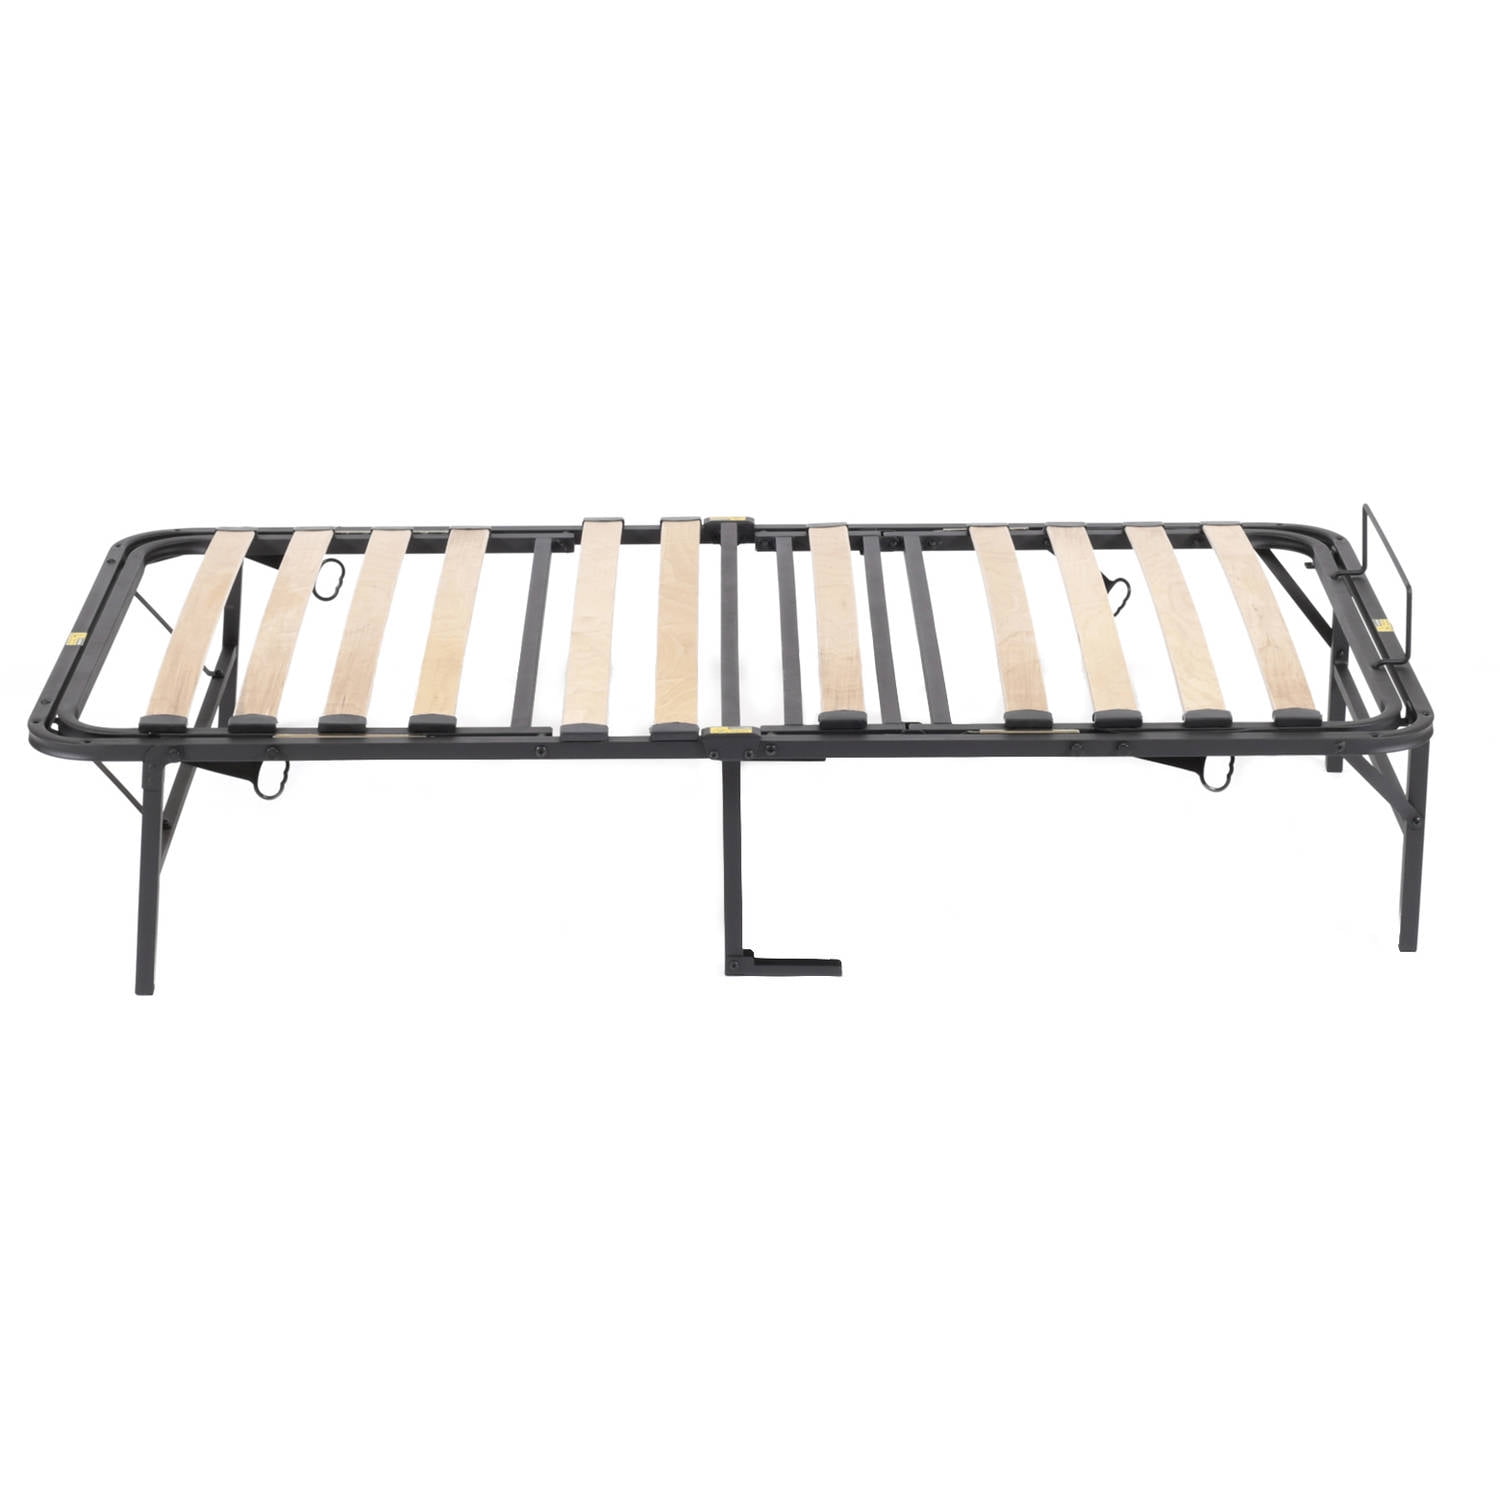 Home Garden Bed Frame Adjustable, Wooden Slat Simple Base Bed Frame Pragma Bed